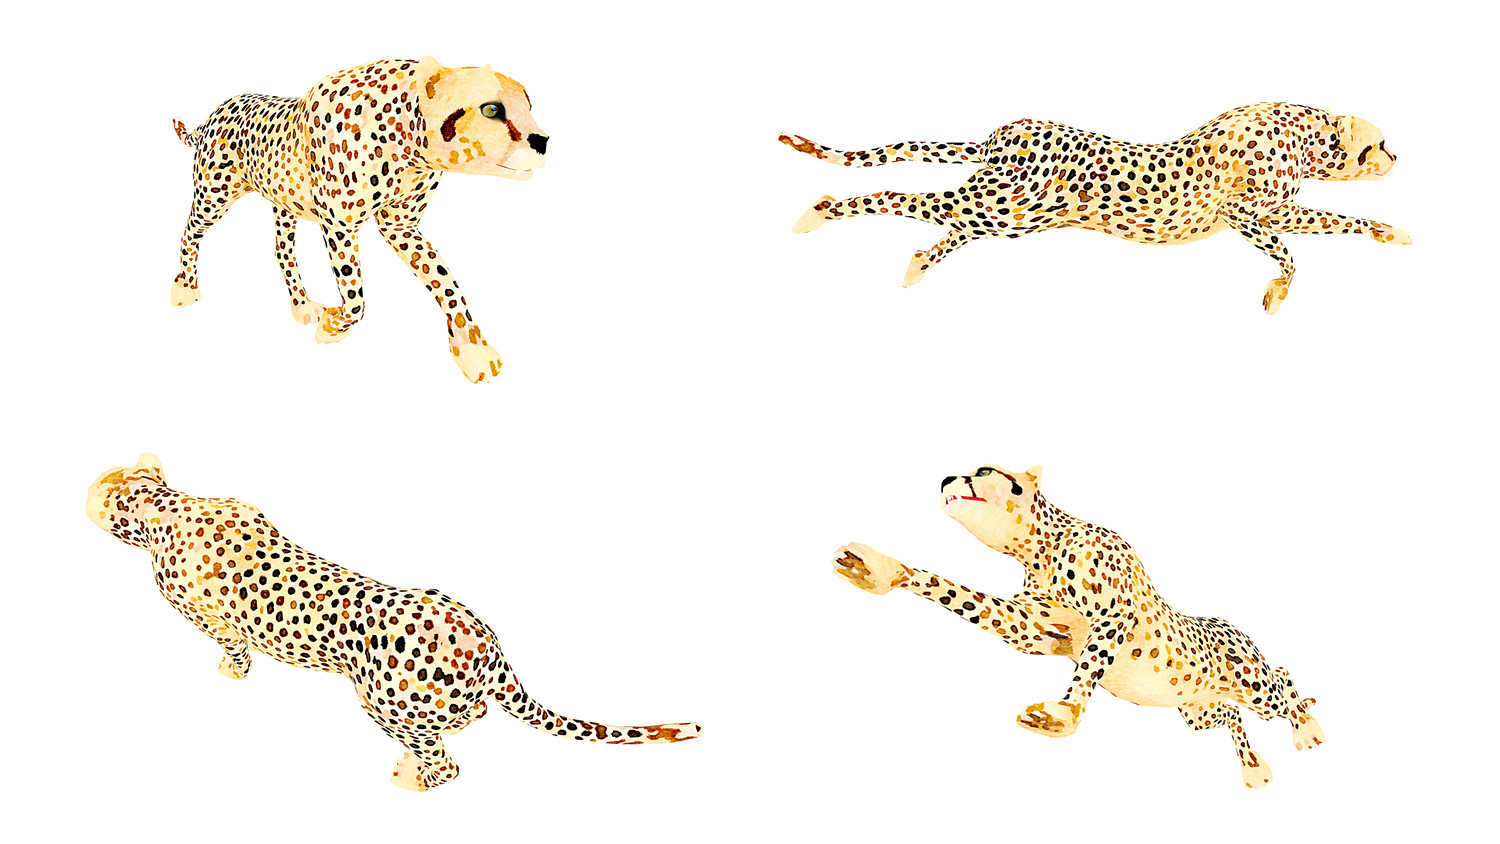 آبجکت حیوانات آفریقایی انیمیت شده - 10